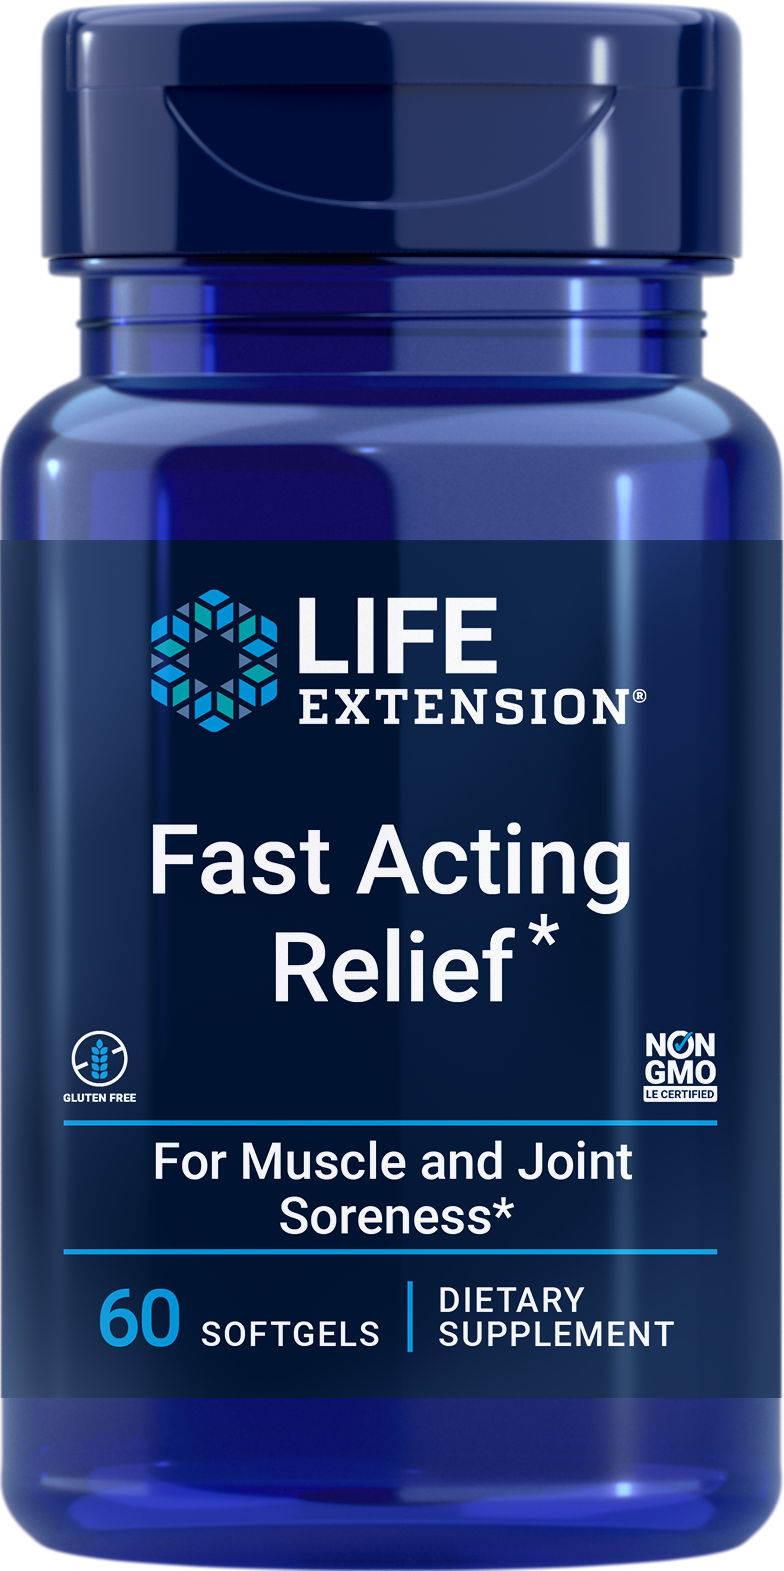 Life Extension Fast Acting Relief, 60 cápsulas blandas con cúrcuma, Boswellia y sésamo negro para comodidad de huesos, músculos y articulaciones.